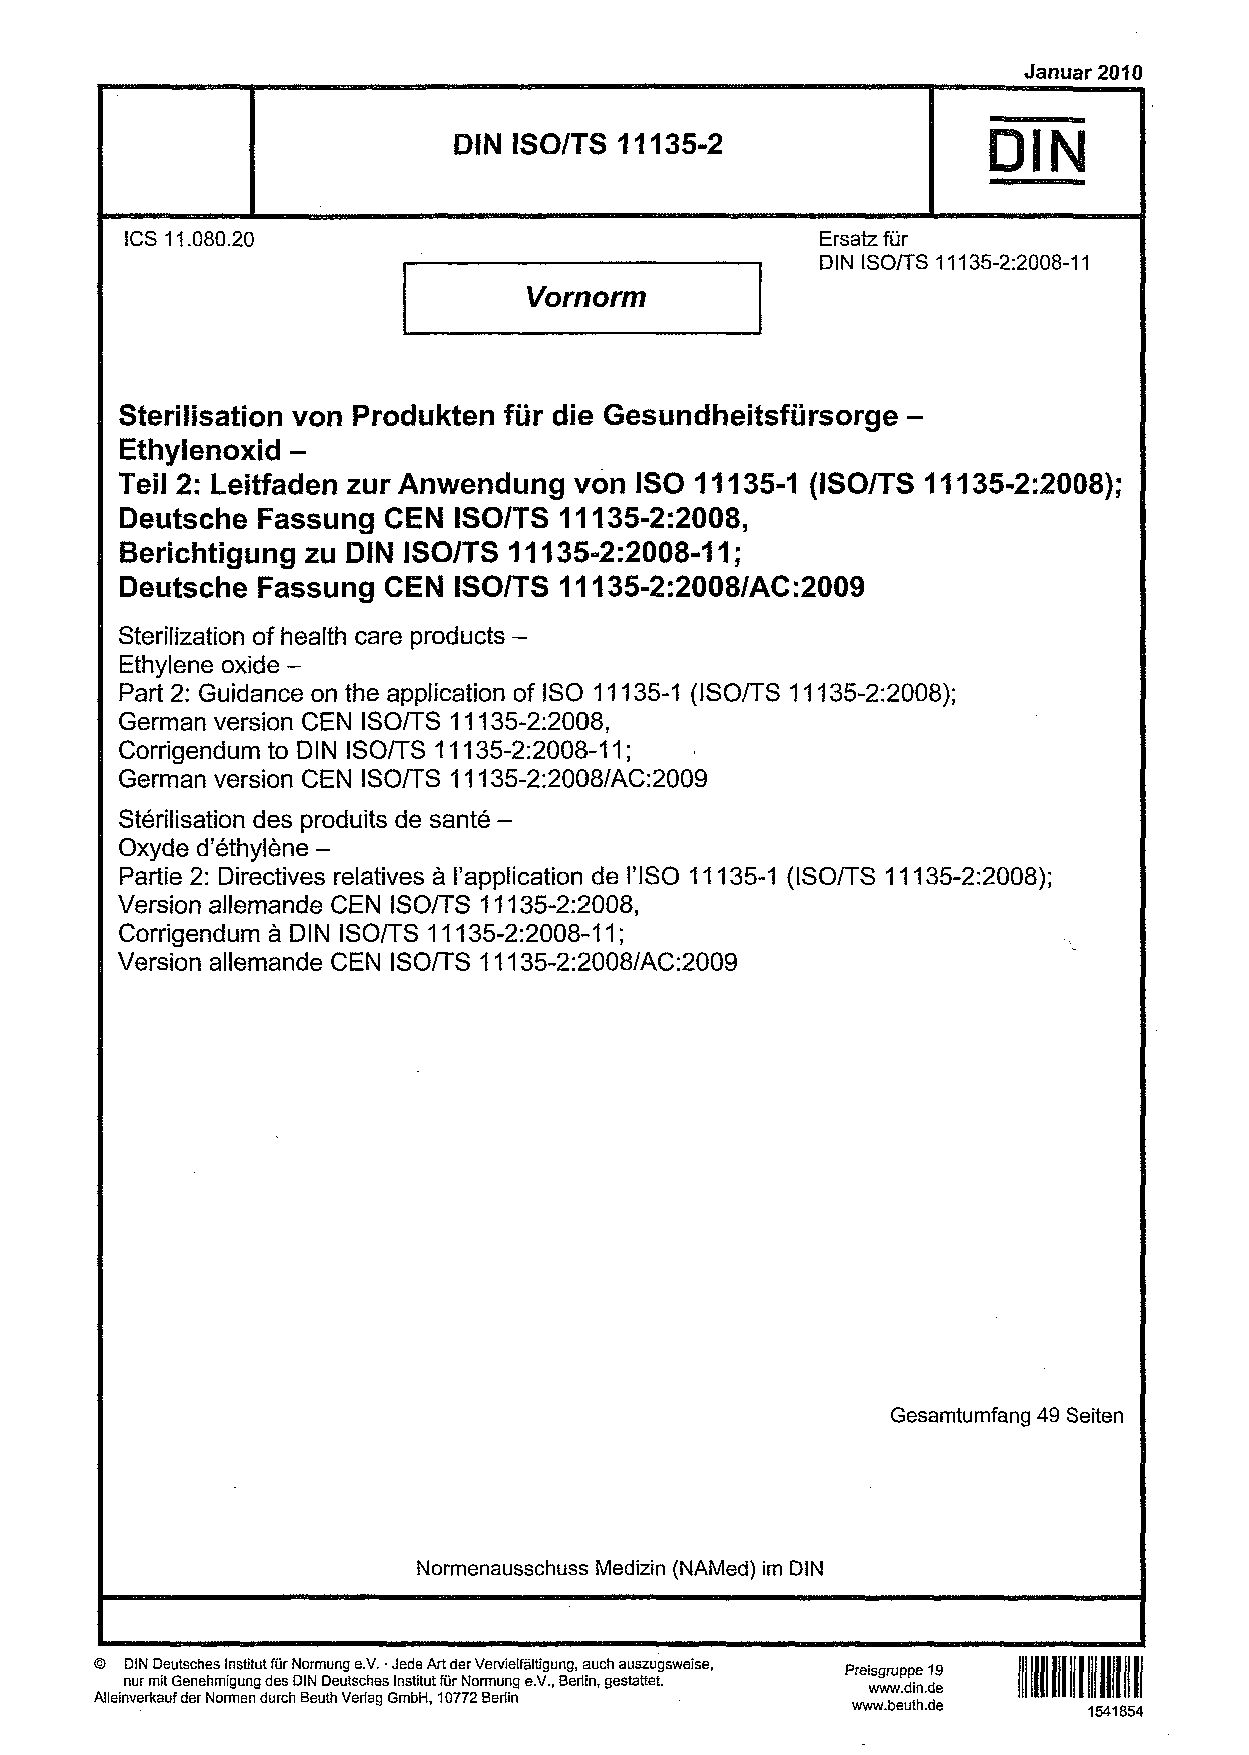 DIN ISO/TS 11135-2:2010封面图